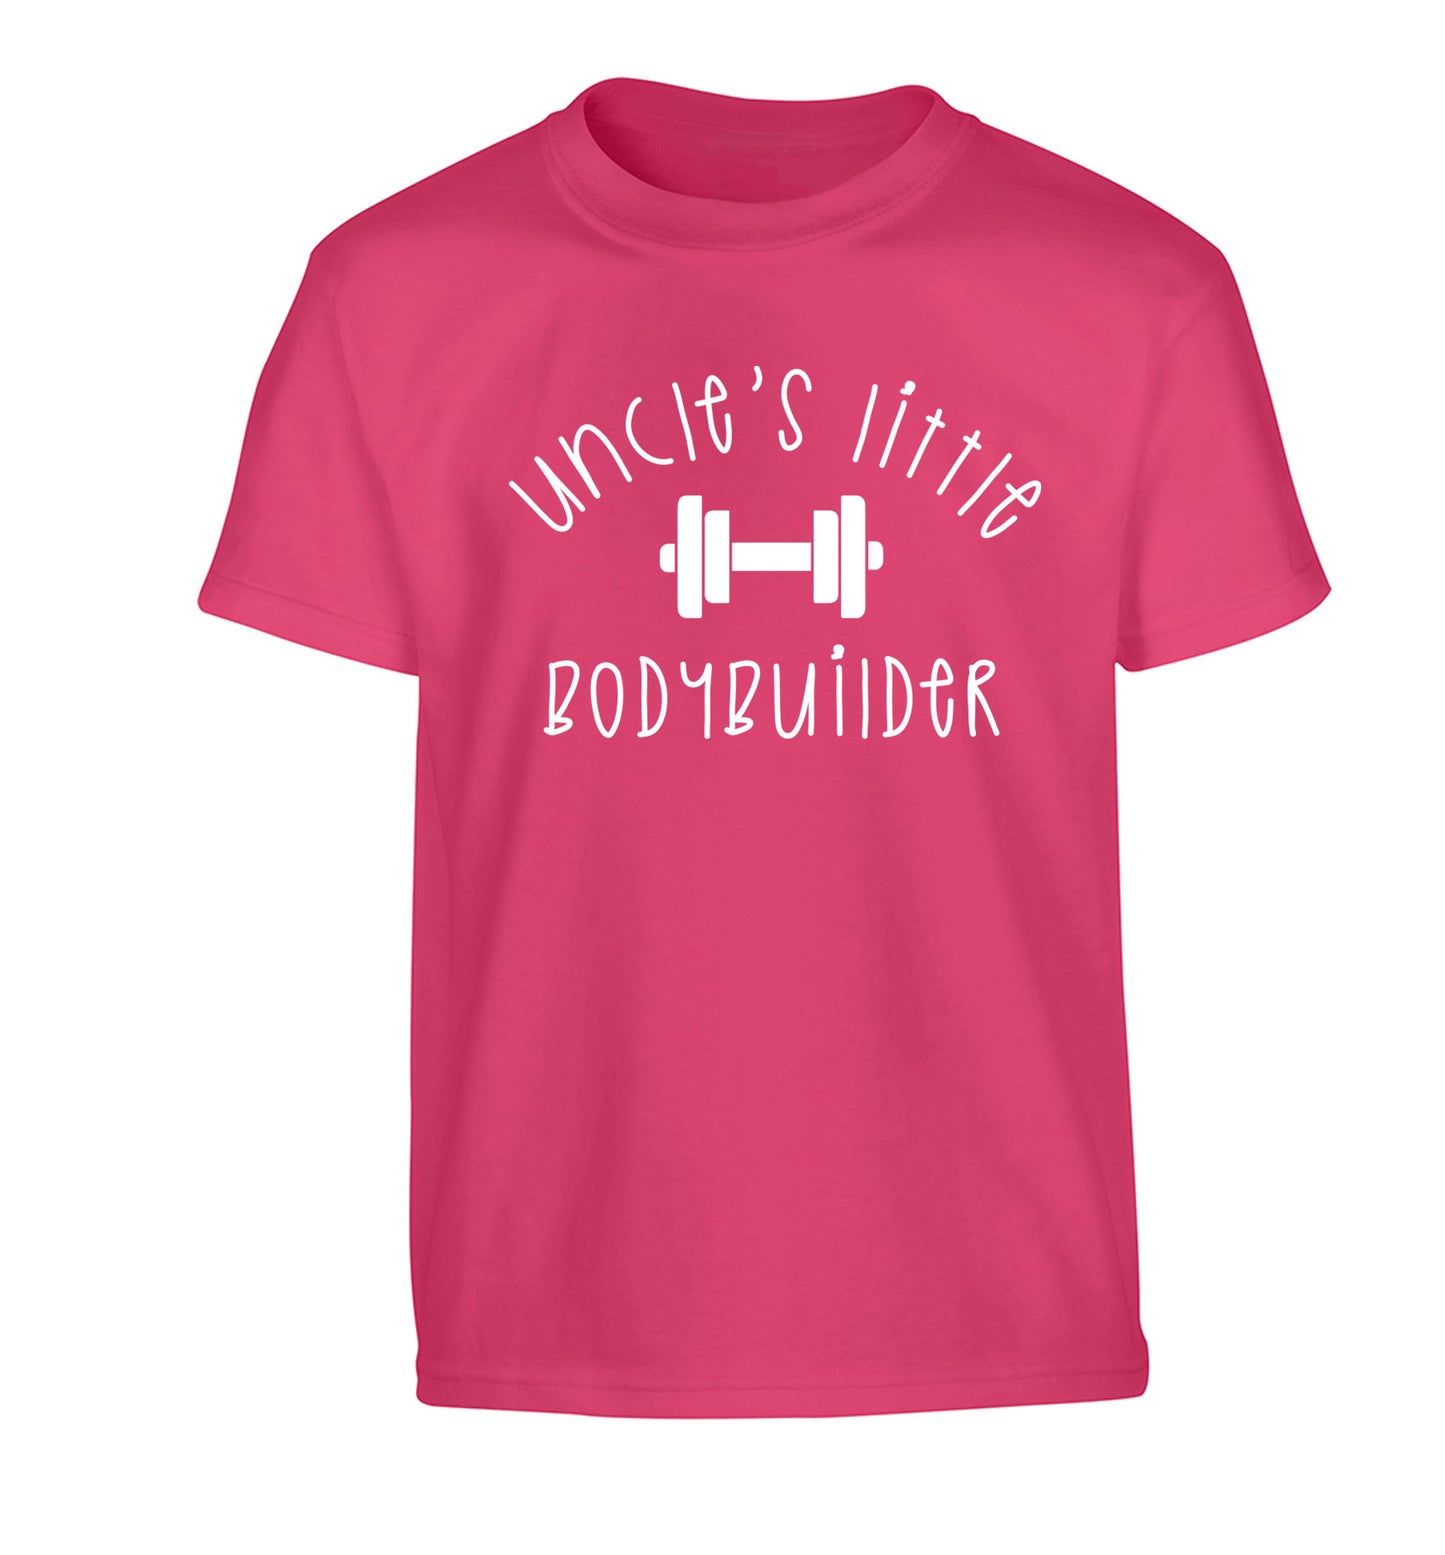 Uncle's little bodybuilder Children's pink Tshirt 12-14 Years